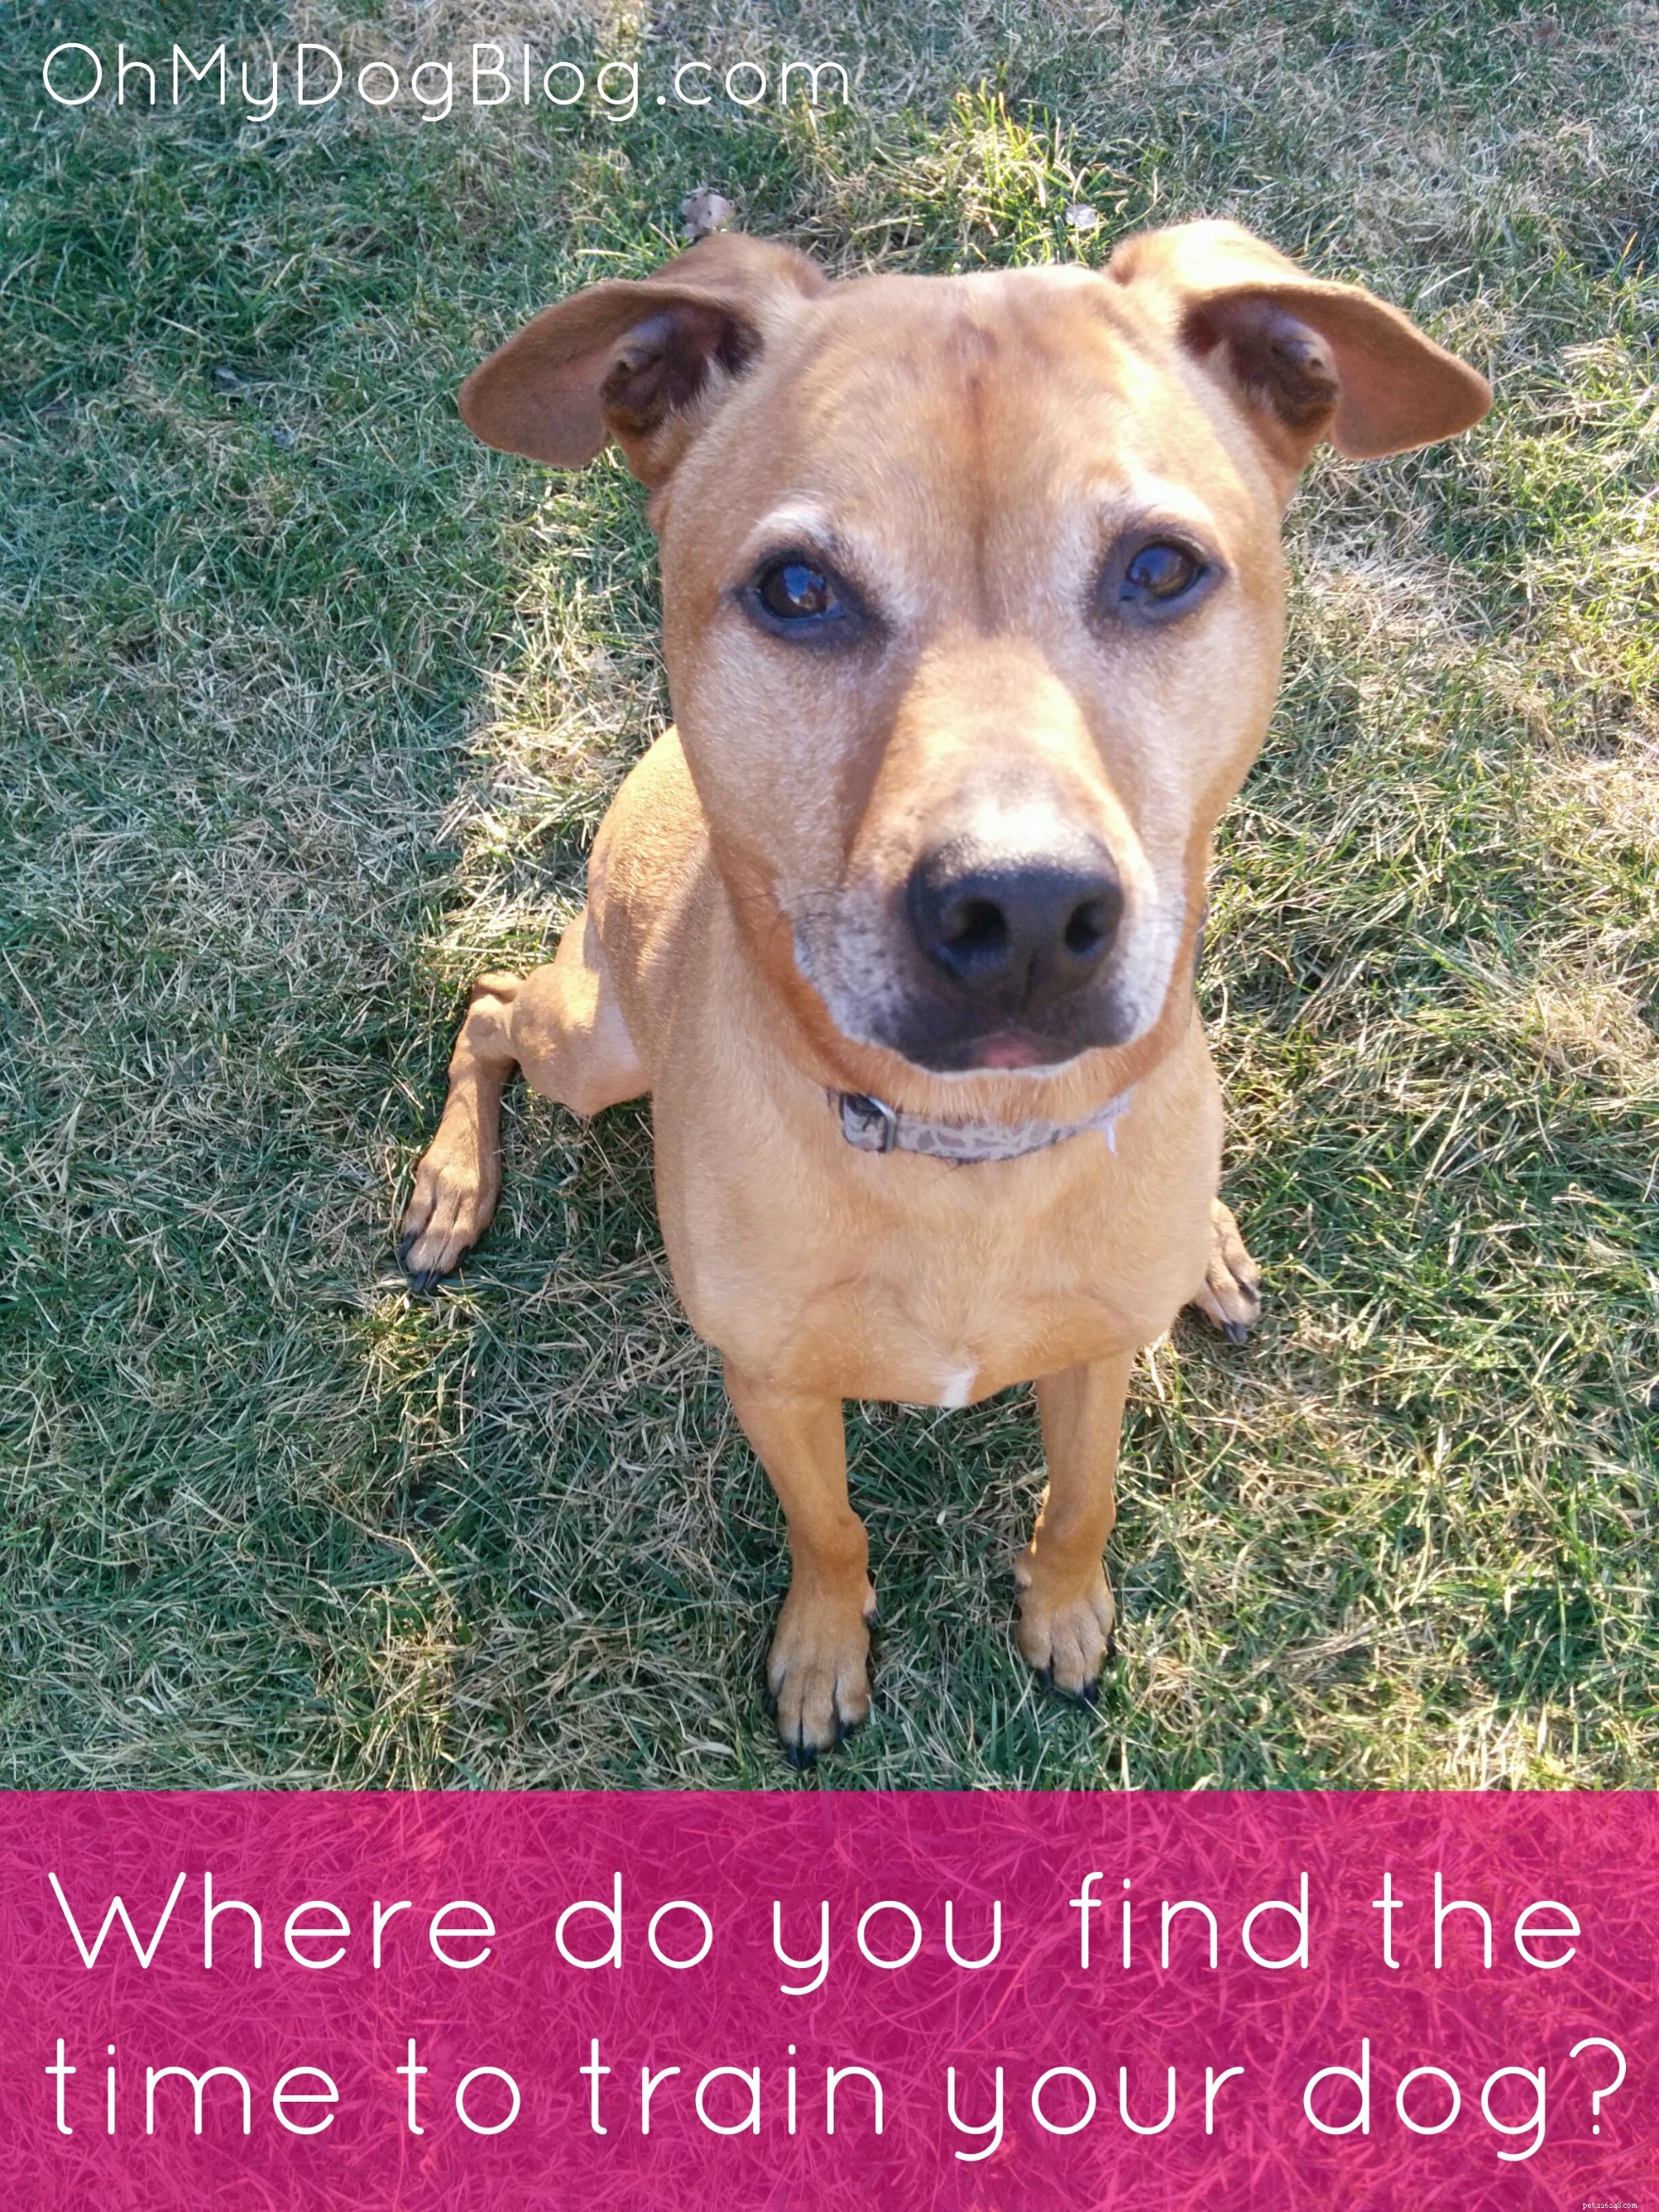 개를 훈련시킬 시간은 어디에서 찾으십니까?